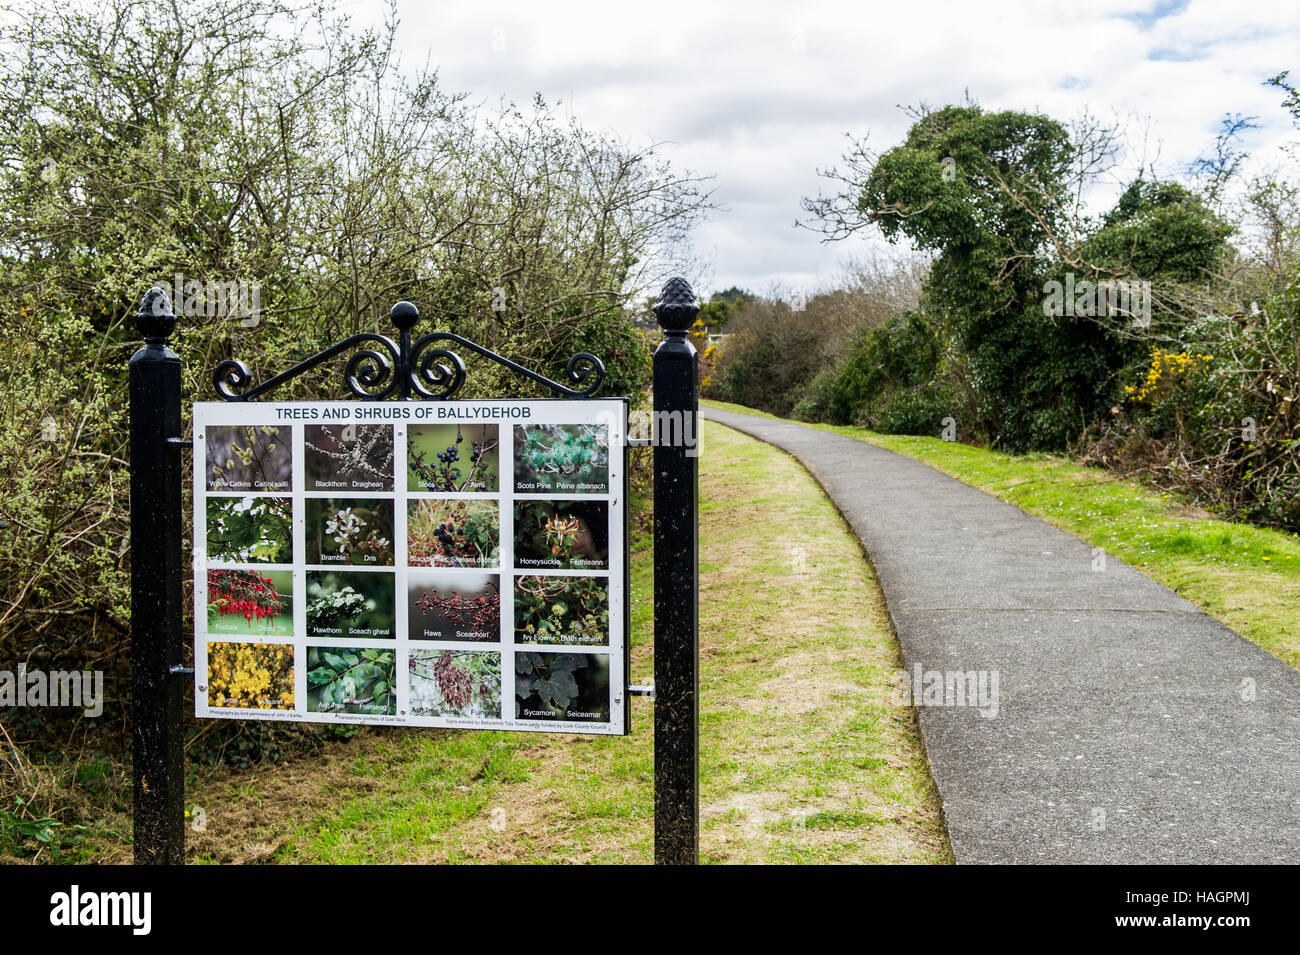 Eine Information melden Sie auf einem Spaziergang durch die Natur zeigt verschiedene Bäume und Sträucher befindet sich in Ballydehob, West Cork, Irland. Stockfoto